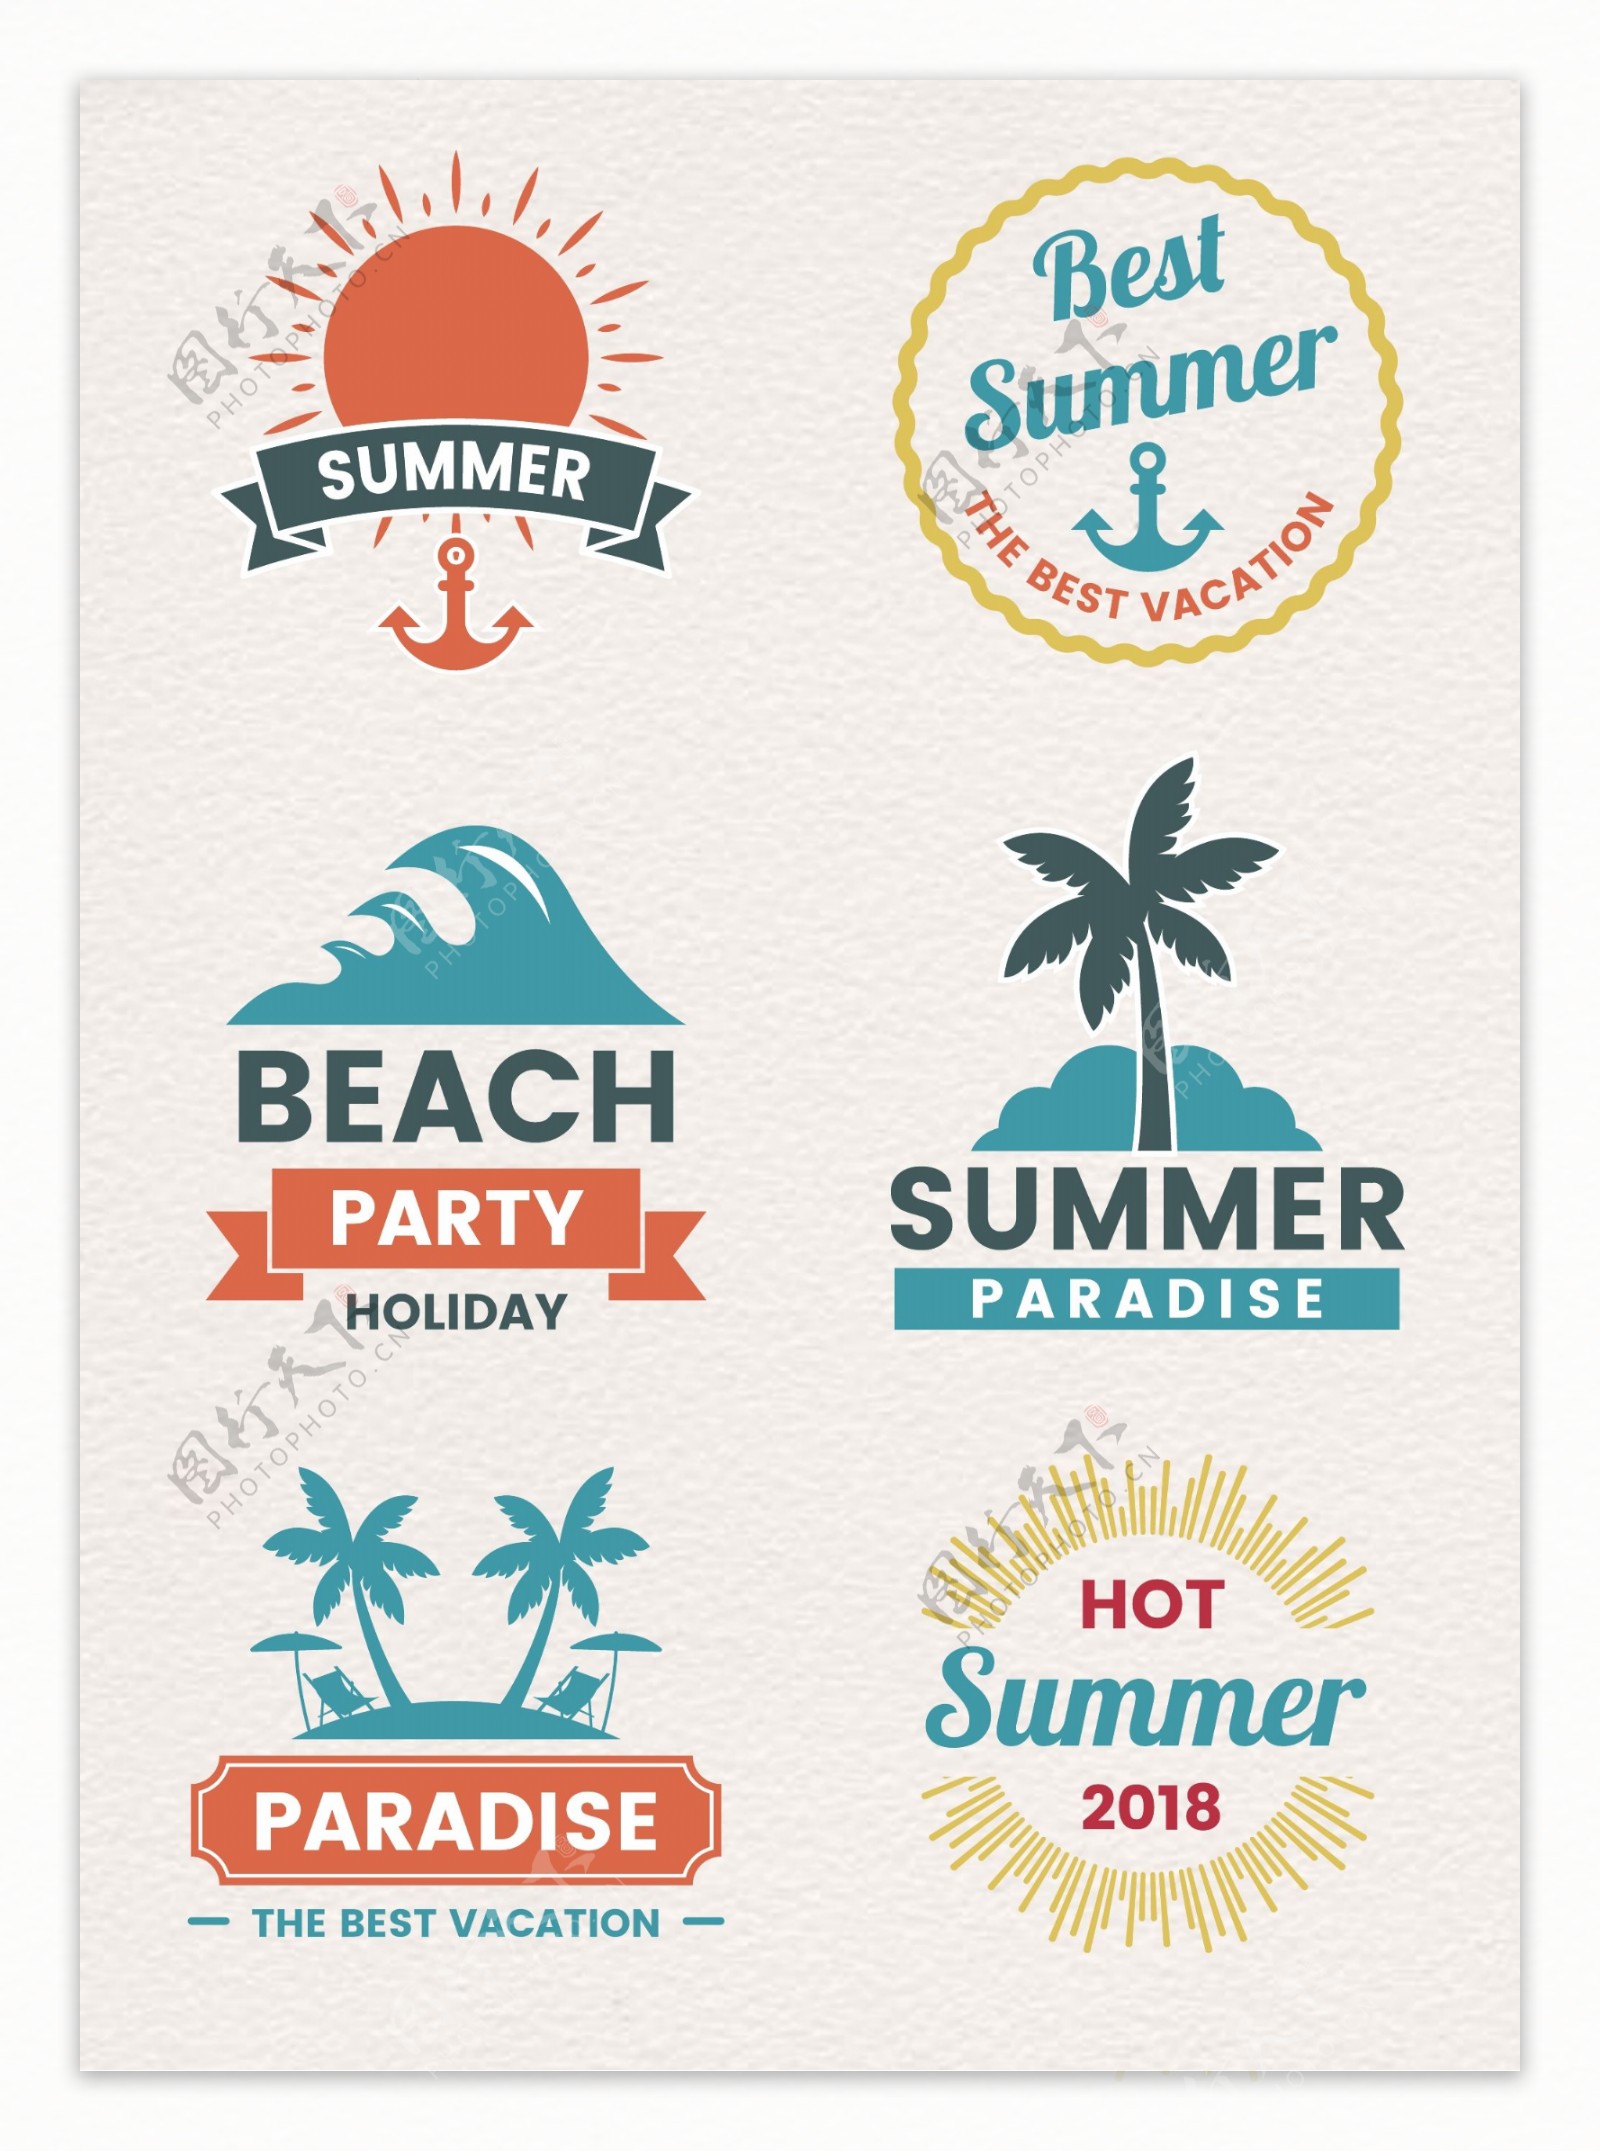 矢量夏日旅行度假标签设计